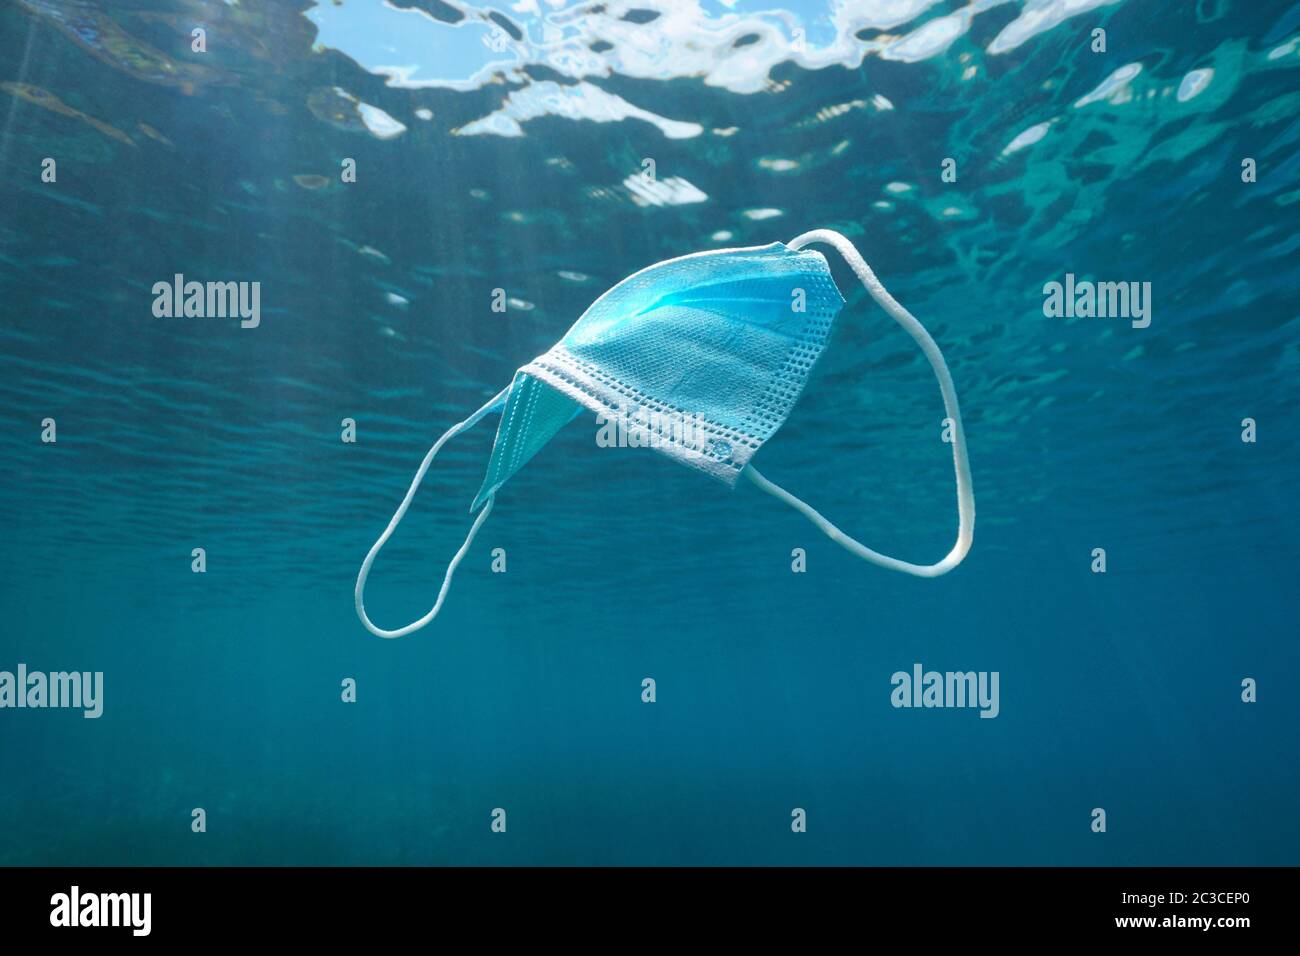 Maschera chirurgica monouso subacquea, rifiuti di plastica nell'oceano da coronavirus COVID-19 pandemia Foto Stock